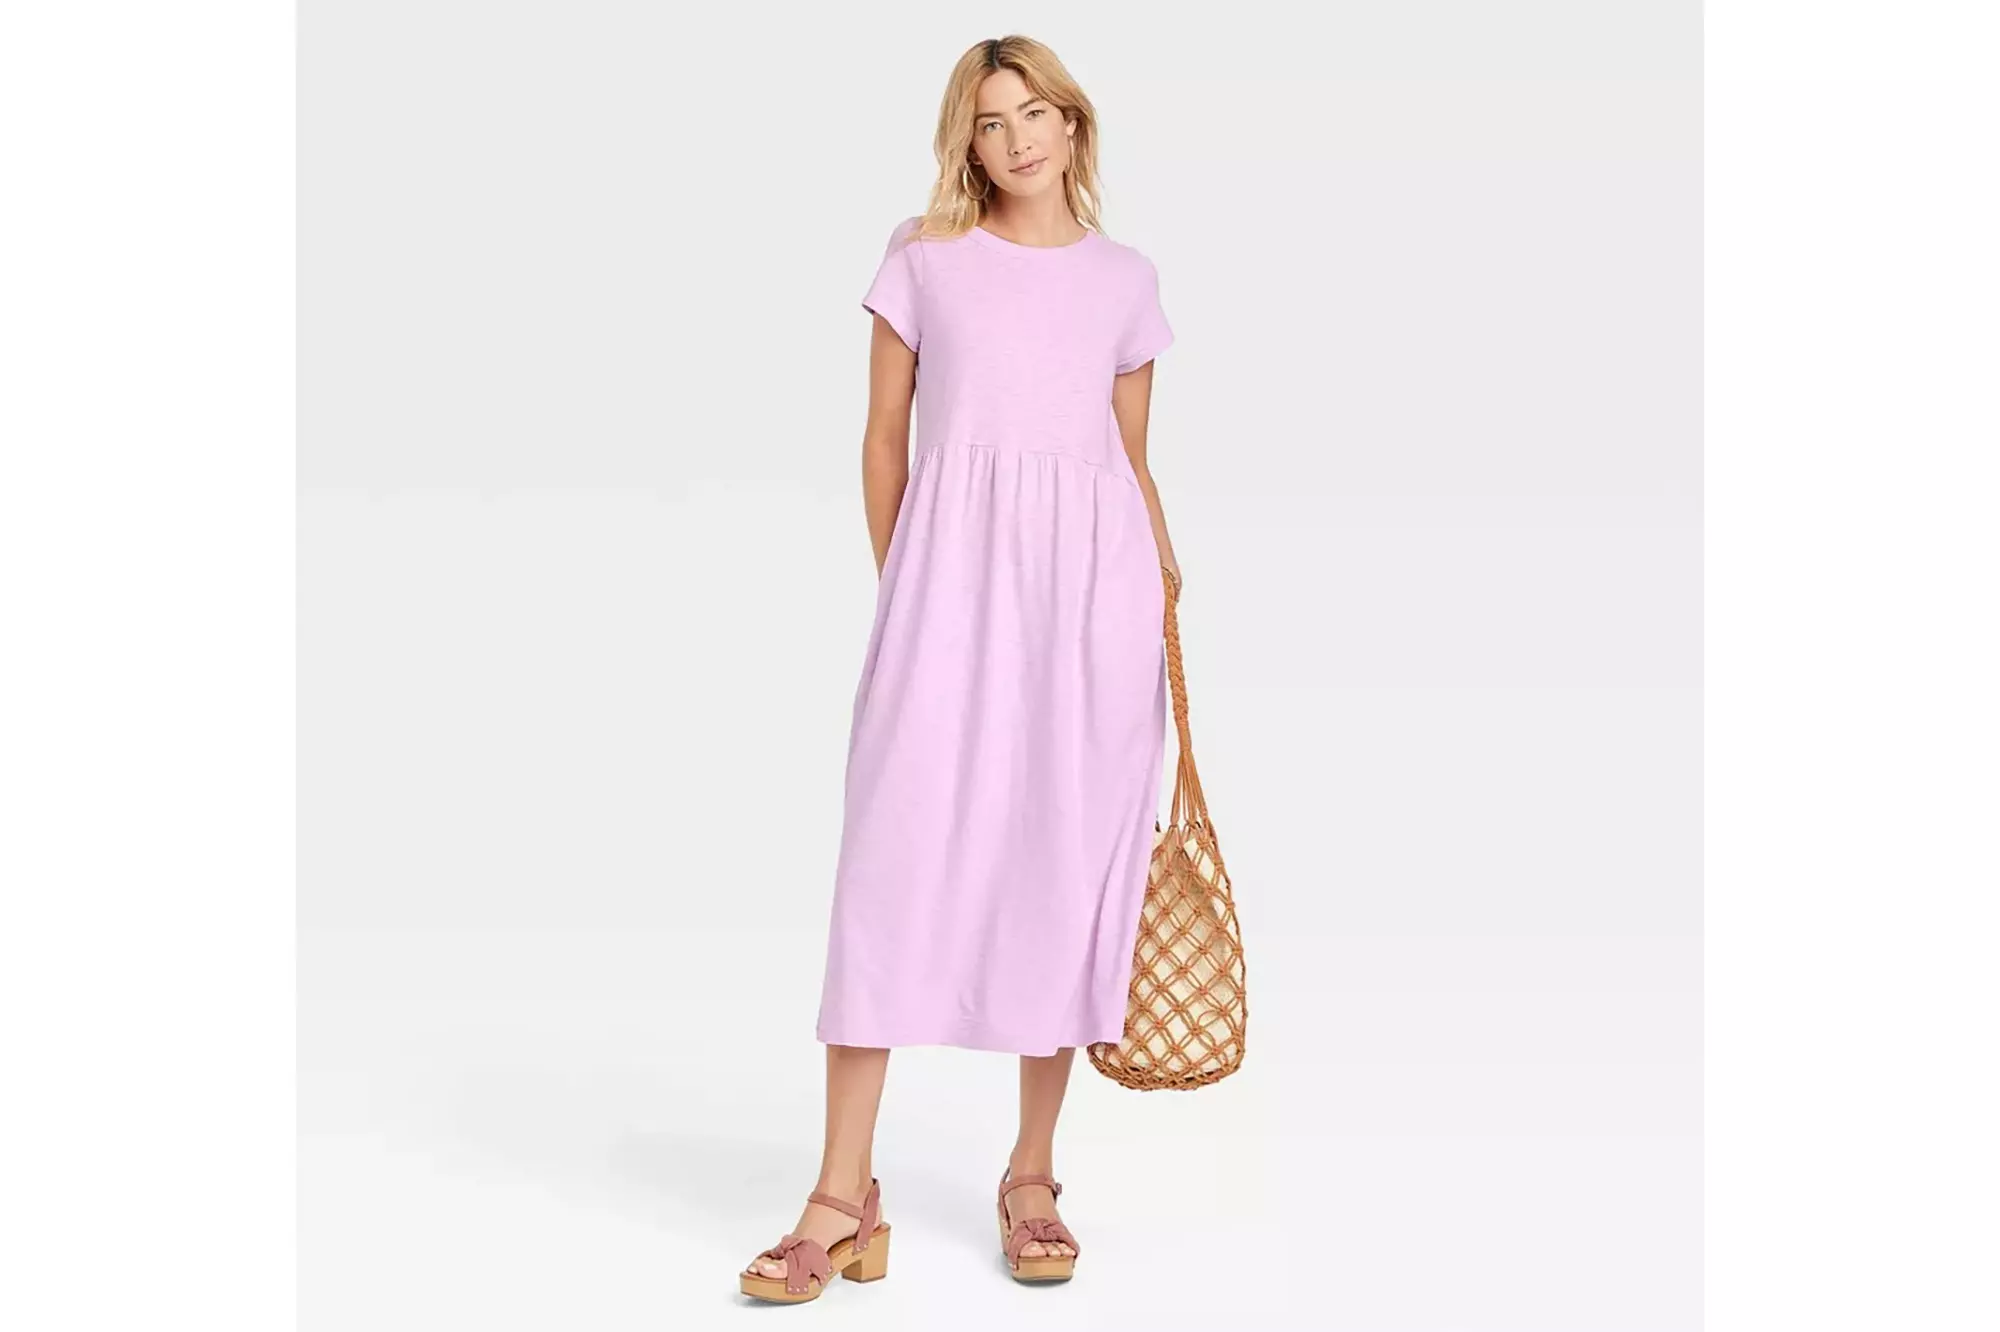 A pink babydoll dress